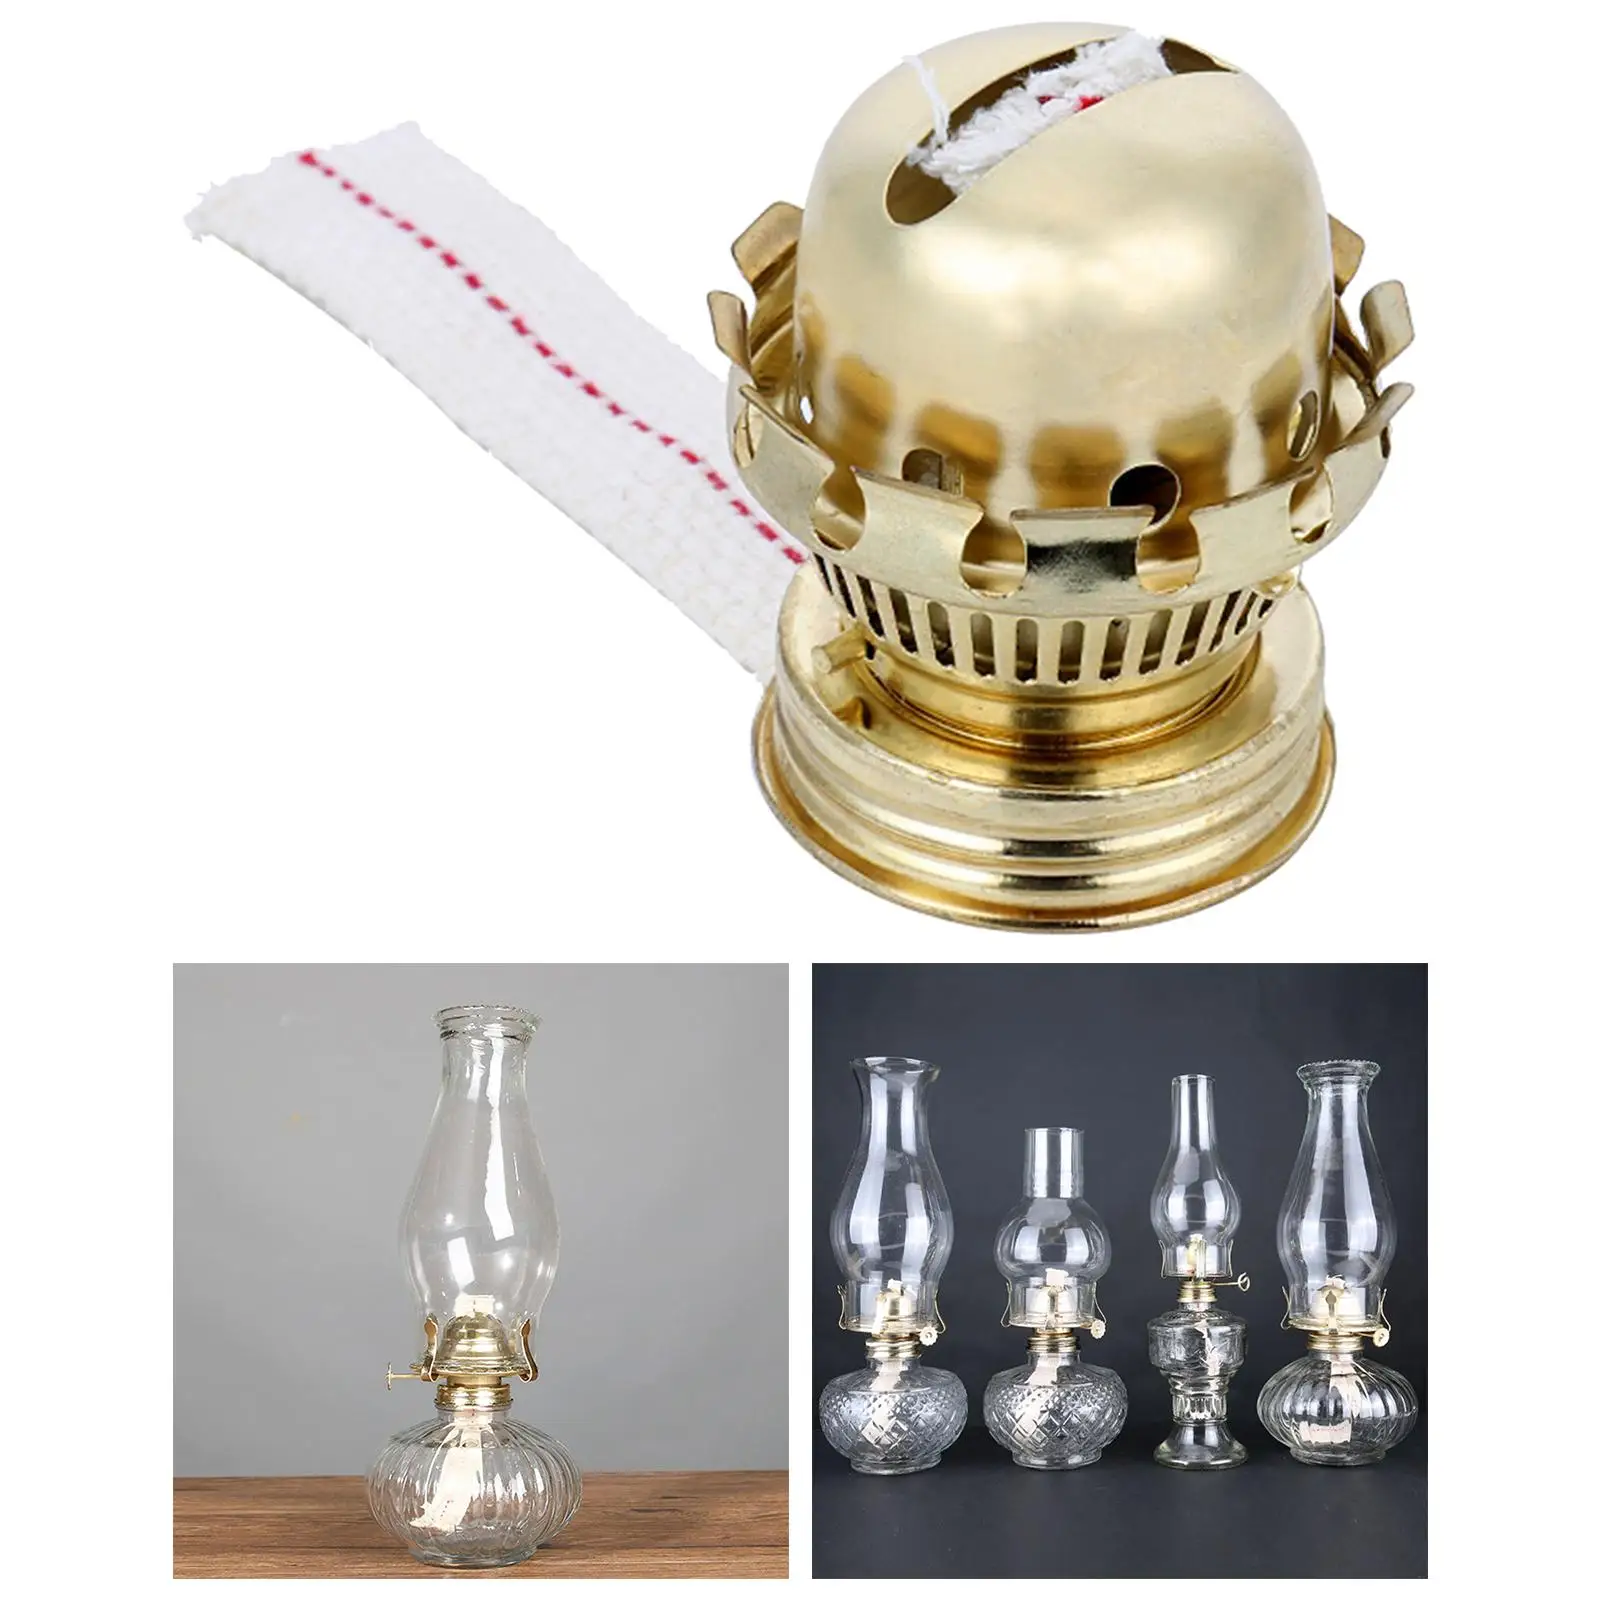  Oil Lamp Part Adjustable DIY Oil Lamp Burner Cotton Lamp Wick for Emergency  Oil Lamp Retro Oil Lamp Desktop Oil Lamps